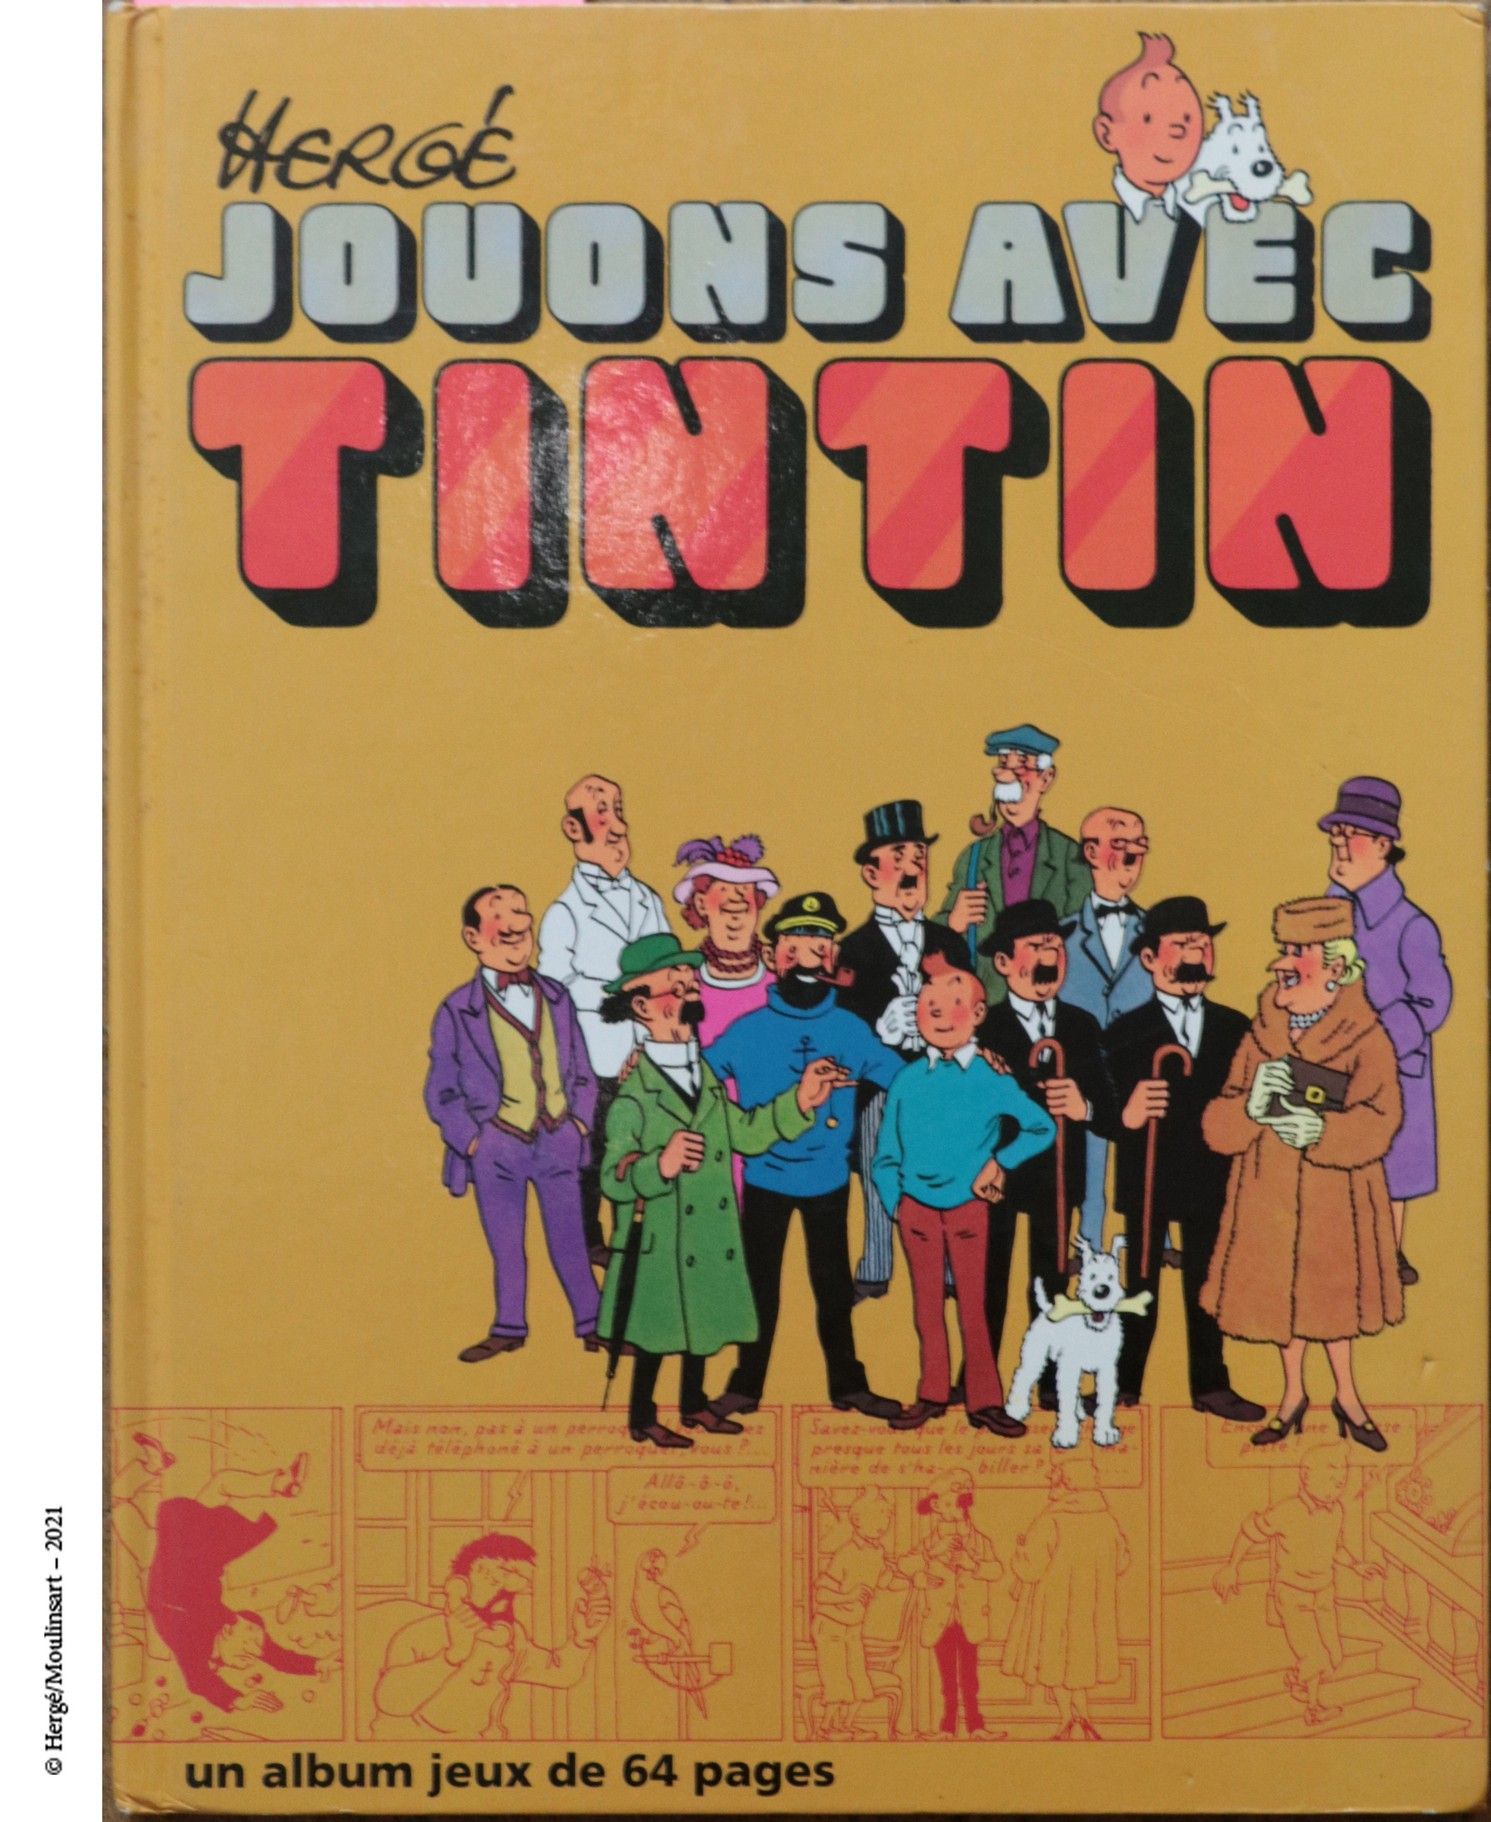 Dérivés HERGÉ/TINTIN/ALBUM JEUX

Jouons avec Tintin

Album jeux Tintin,Ed. Caste&hellip;